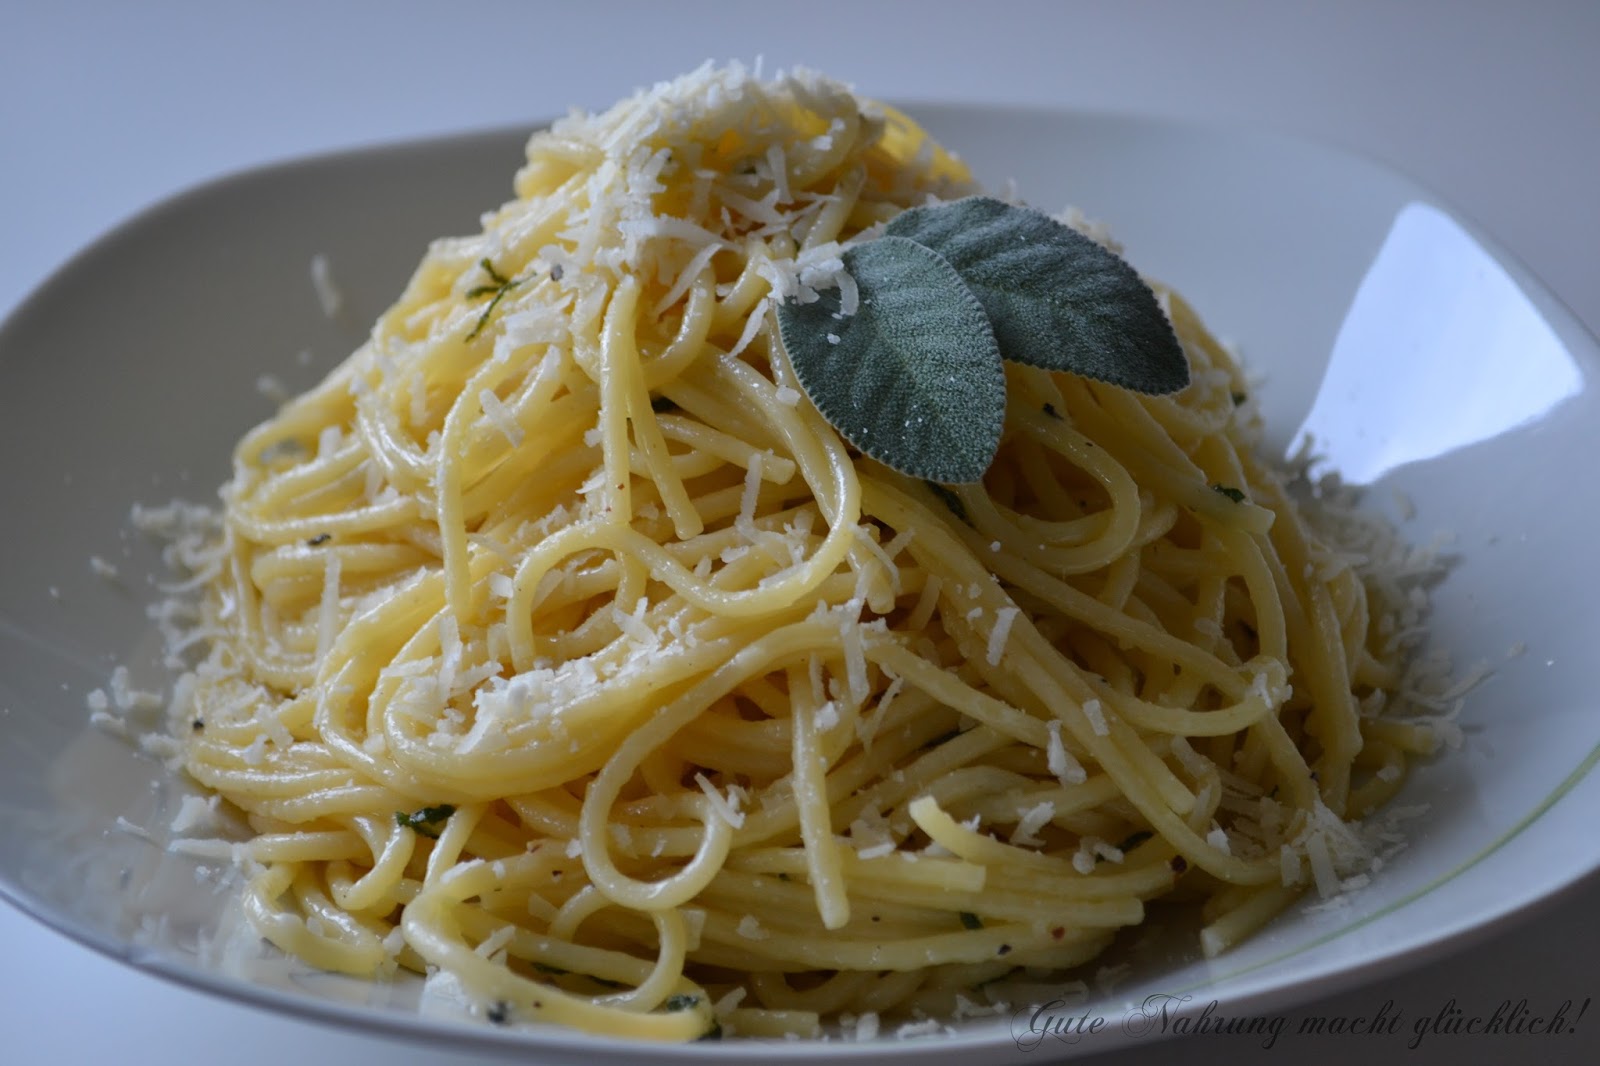 Gute Nahrung macht glücklich : Spaghetti mit Butter, Salbei und Parmesan